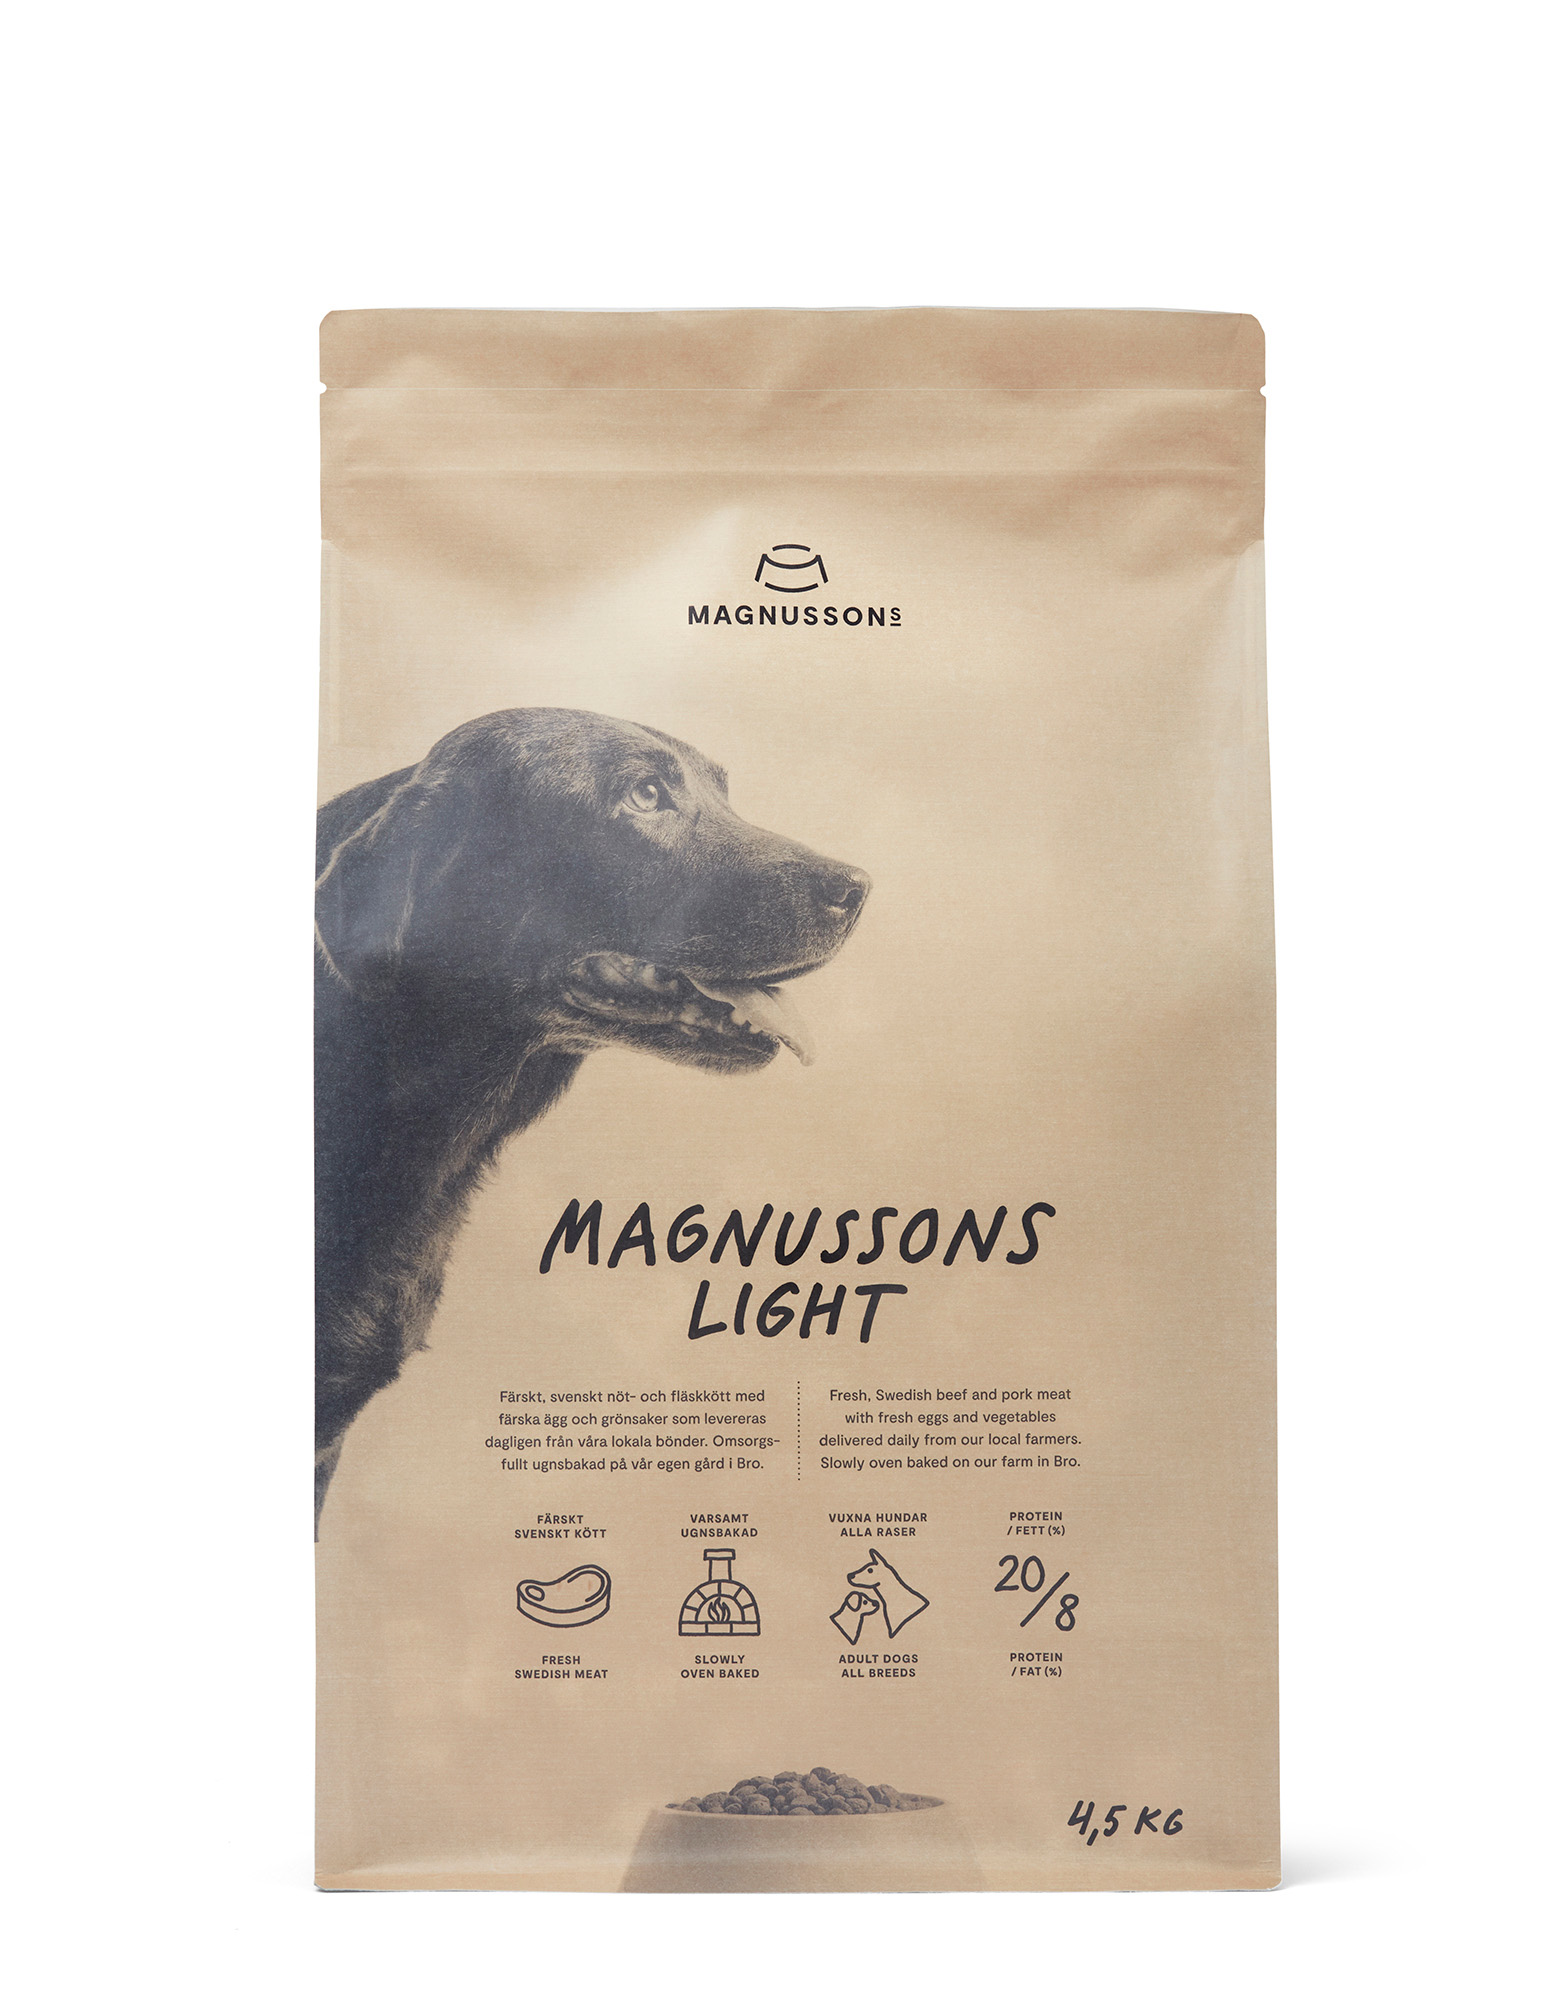 Корм для собак контроль веса. Magnusson Light корм для собак. Сухой корм Magnusson meat&Biscuit, 4.5 к. Magnusson корм для собак беззерновой.